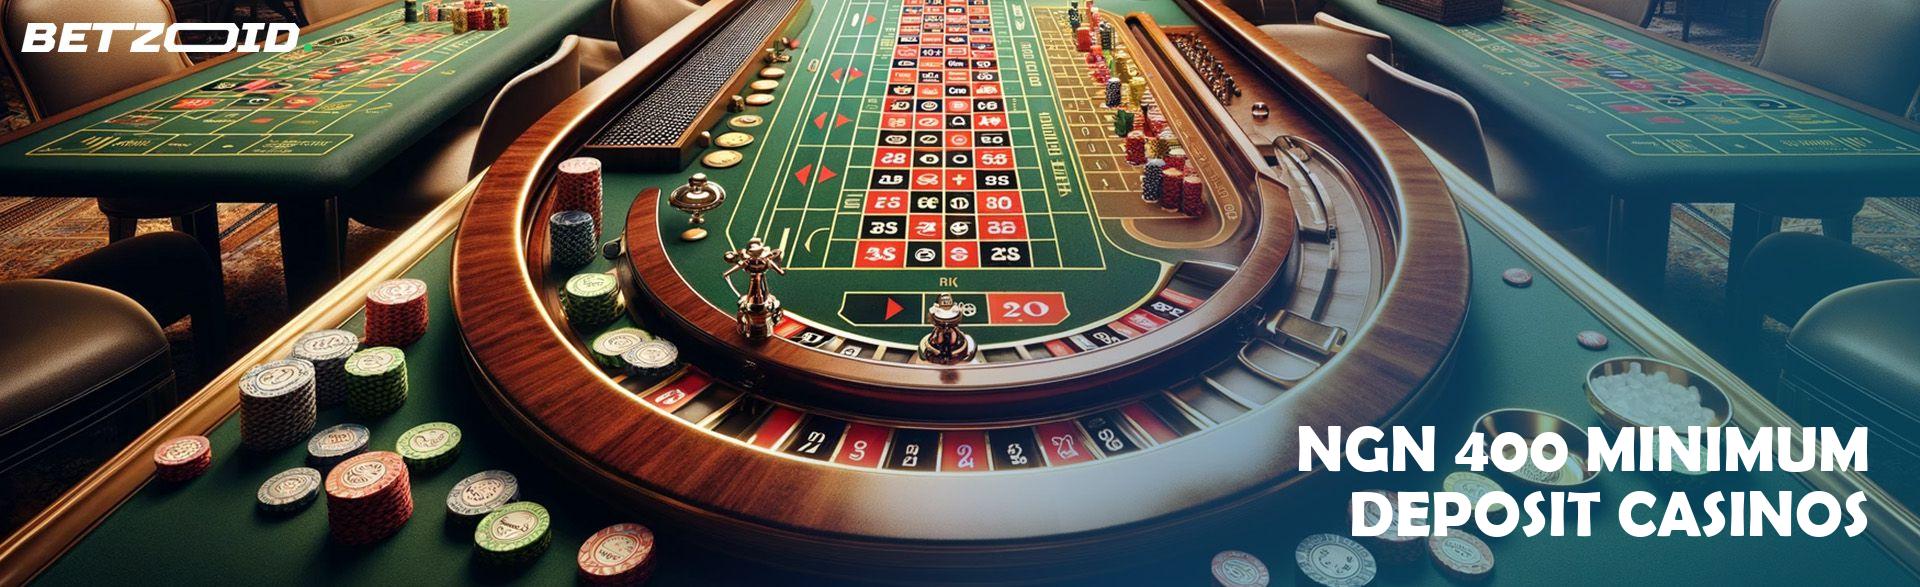 ₦400 Minimum Deposit Casinos.